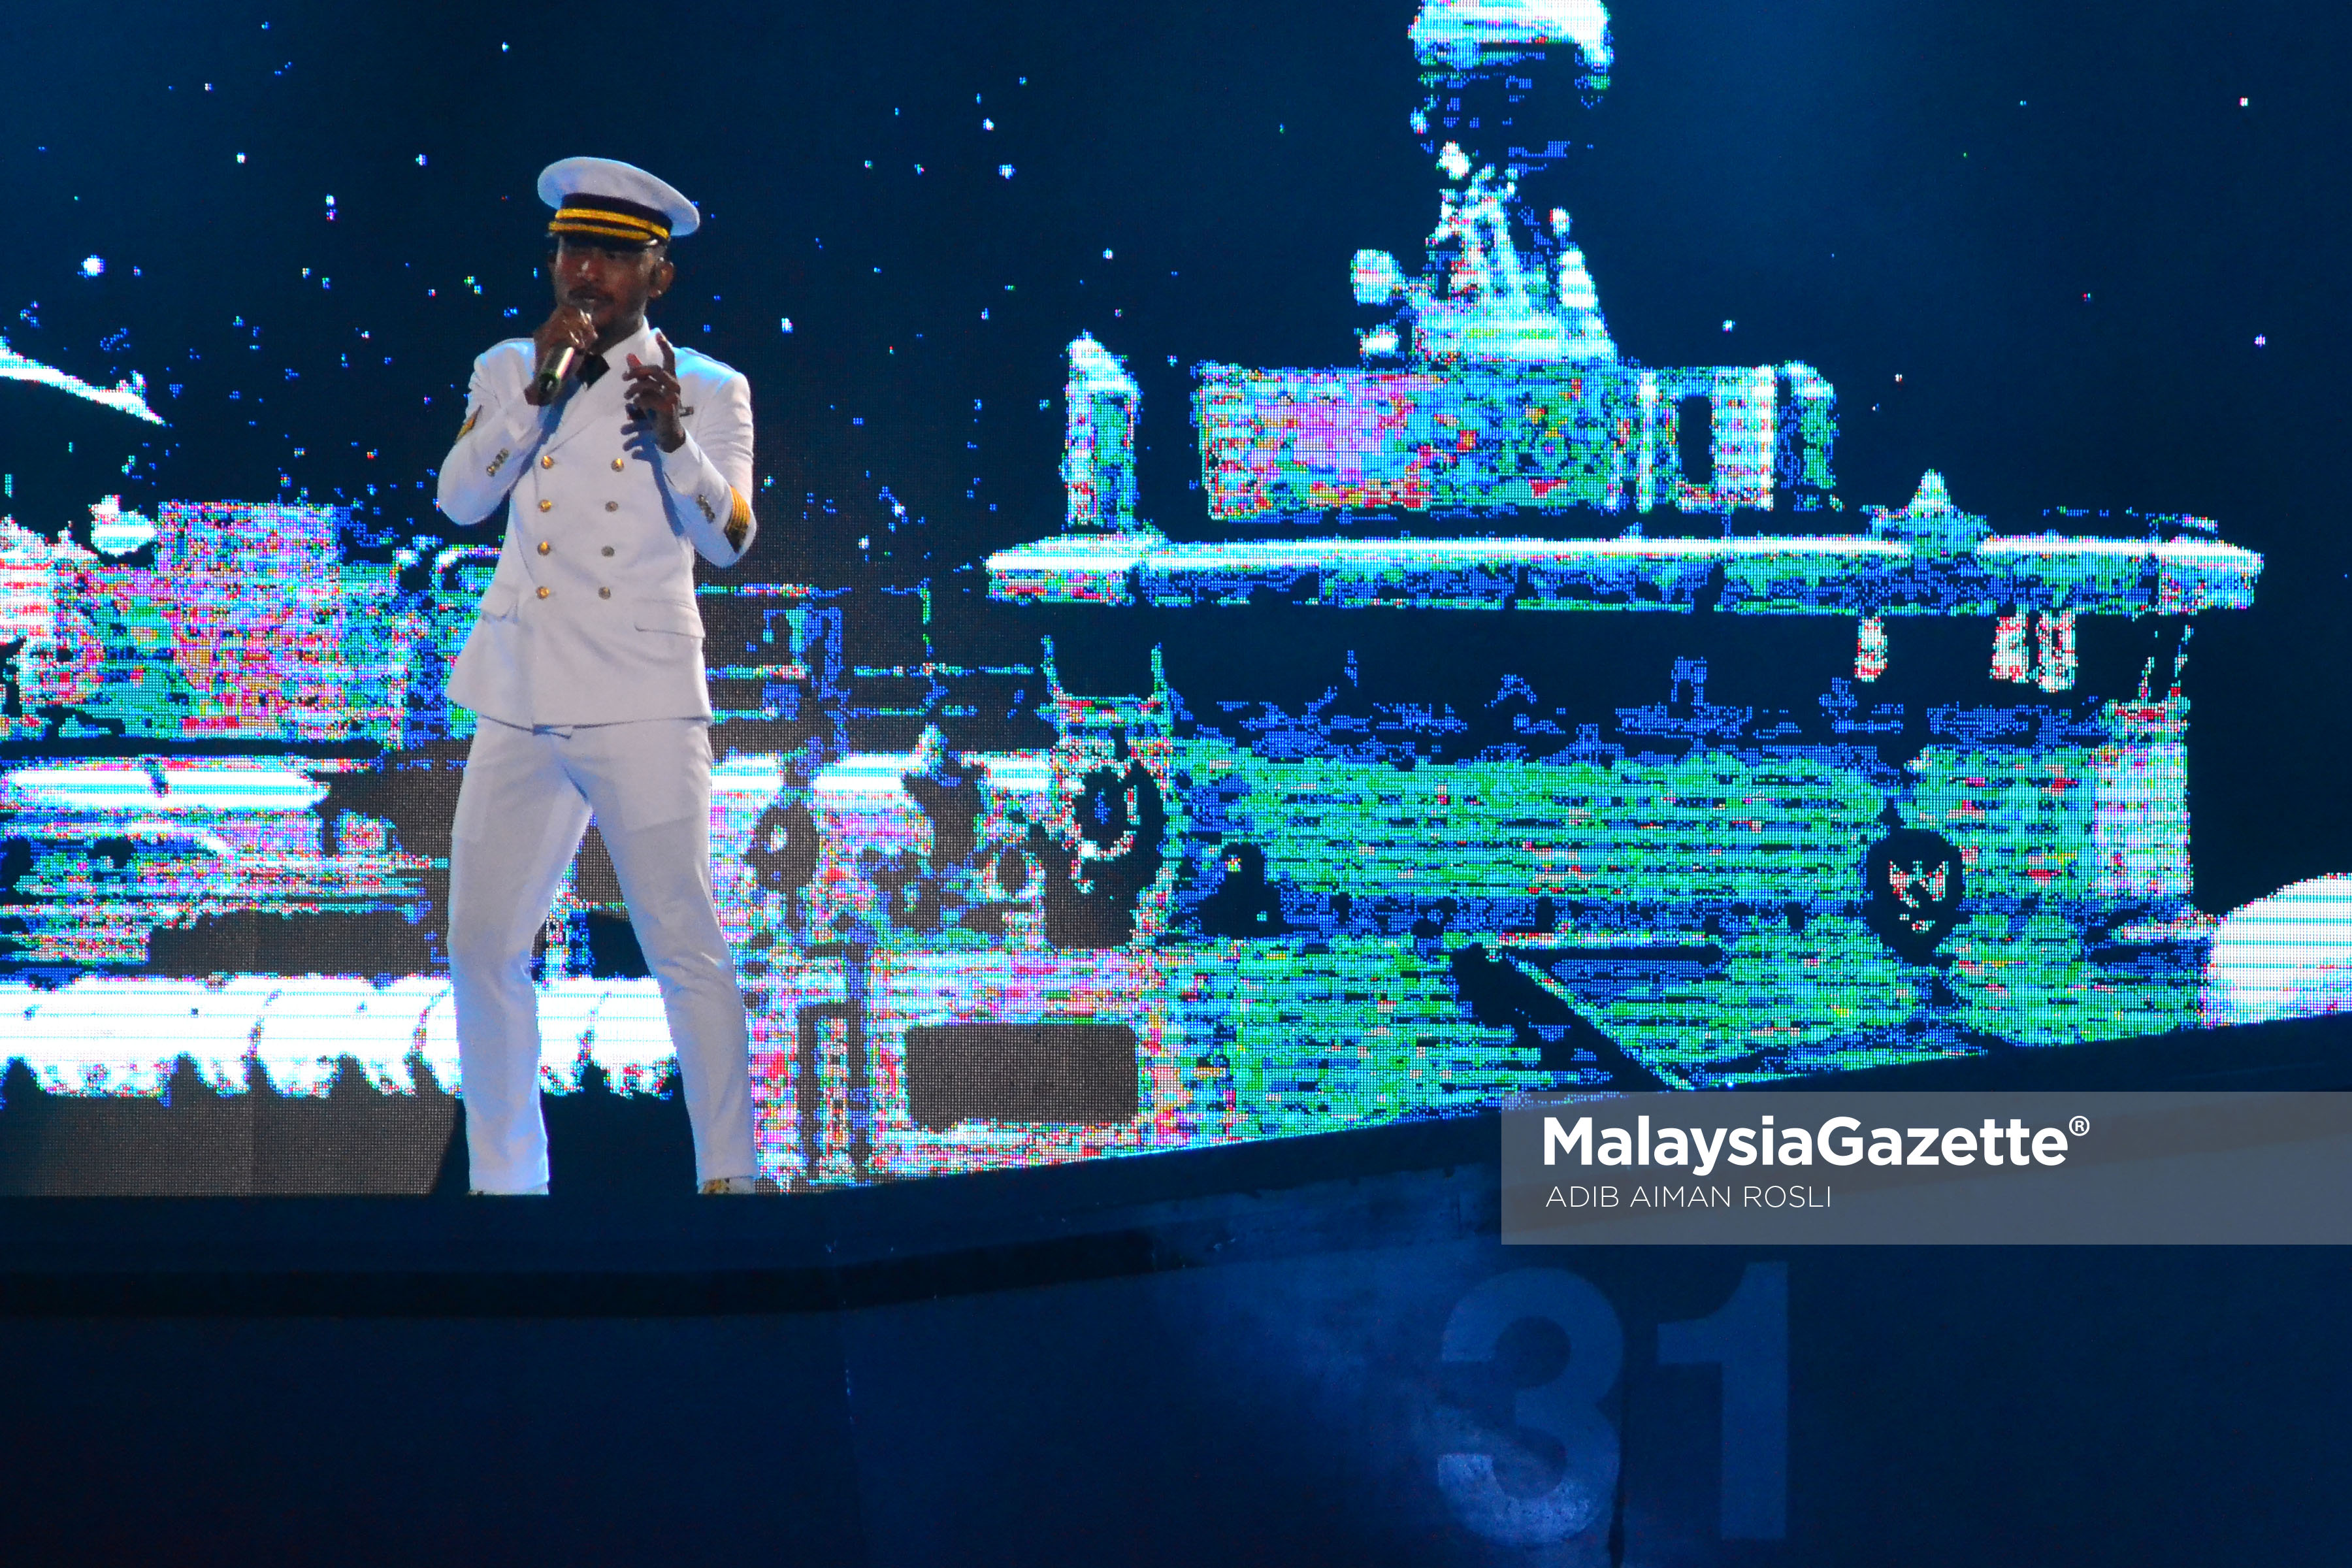 Persembahan dari Black yang memakai pakaian seragam Tentera Laut untuk persembahan nyanyian lagu "Anugerah Terindah" pada malam Anugerah Juara Lagu KE 31 di Pusat Dagangan Dunia Putra (PWTC), Kuala Lumpur. foto ADIB AIMAN ROSLI, 22 JANUARI 2017